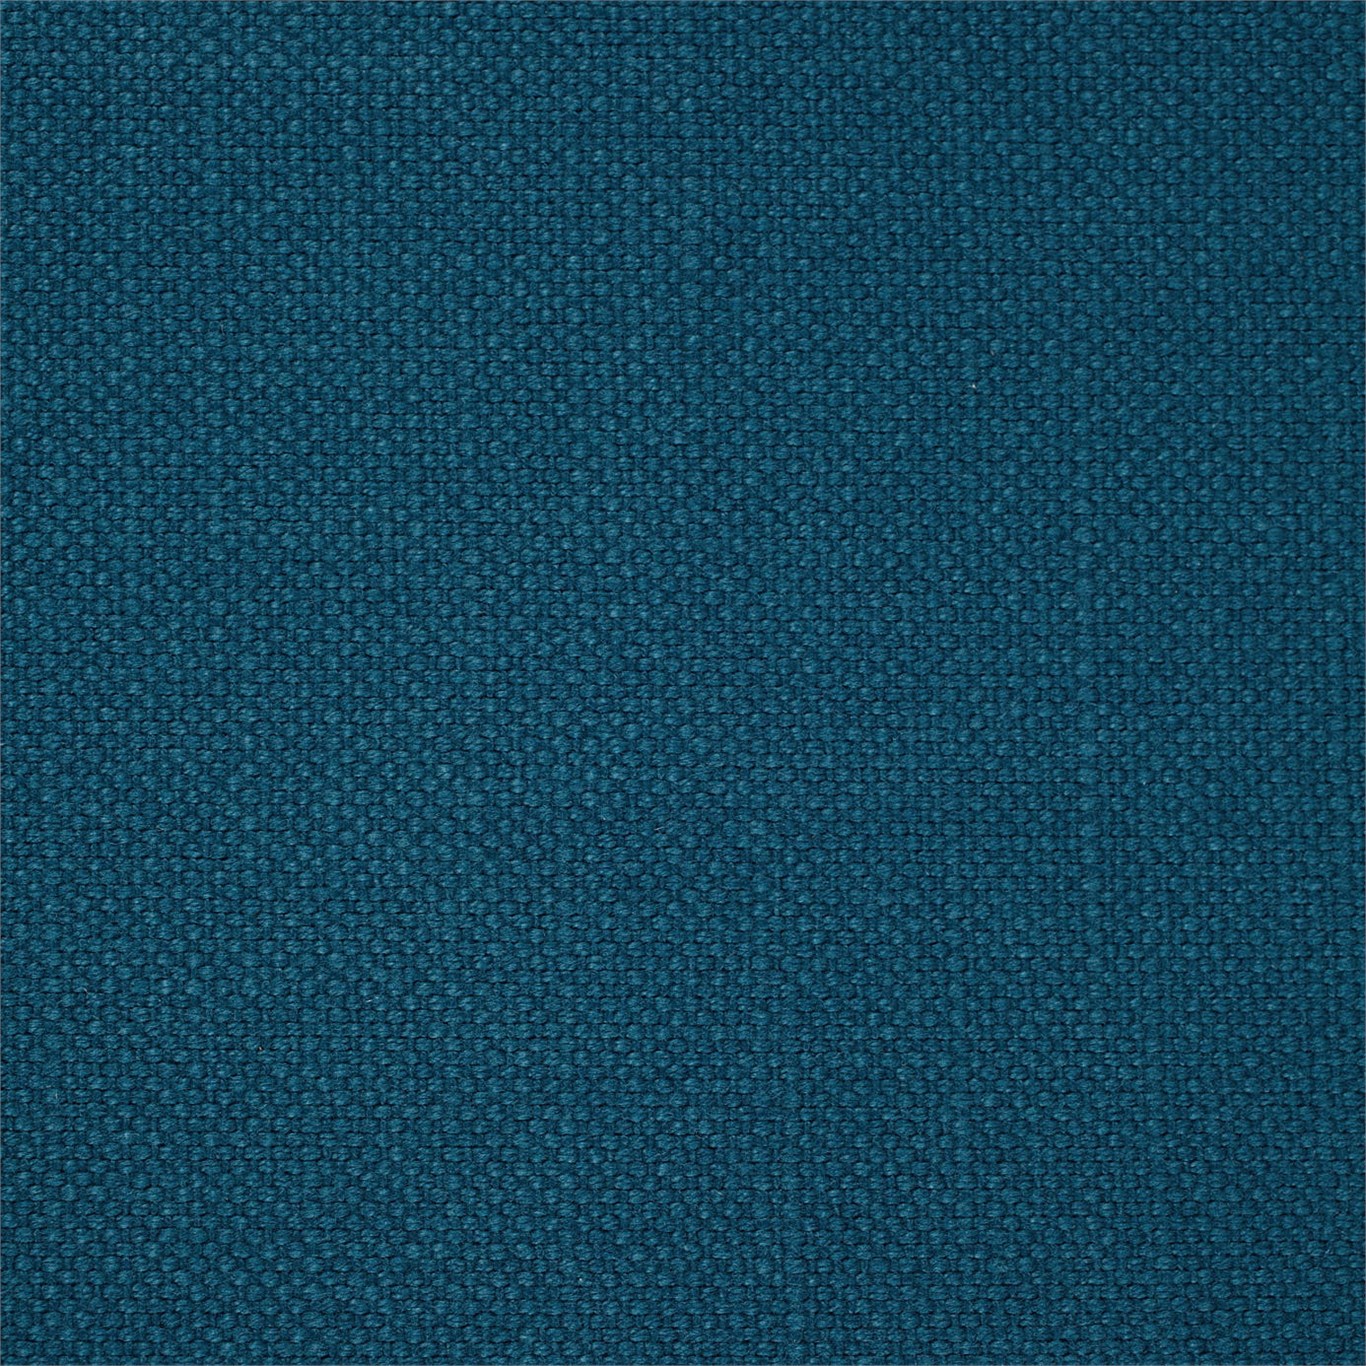 Arley Spruce Fabric by SAN